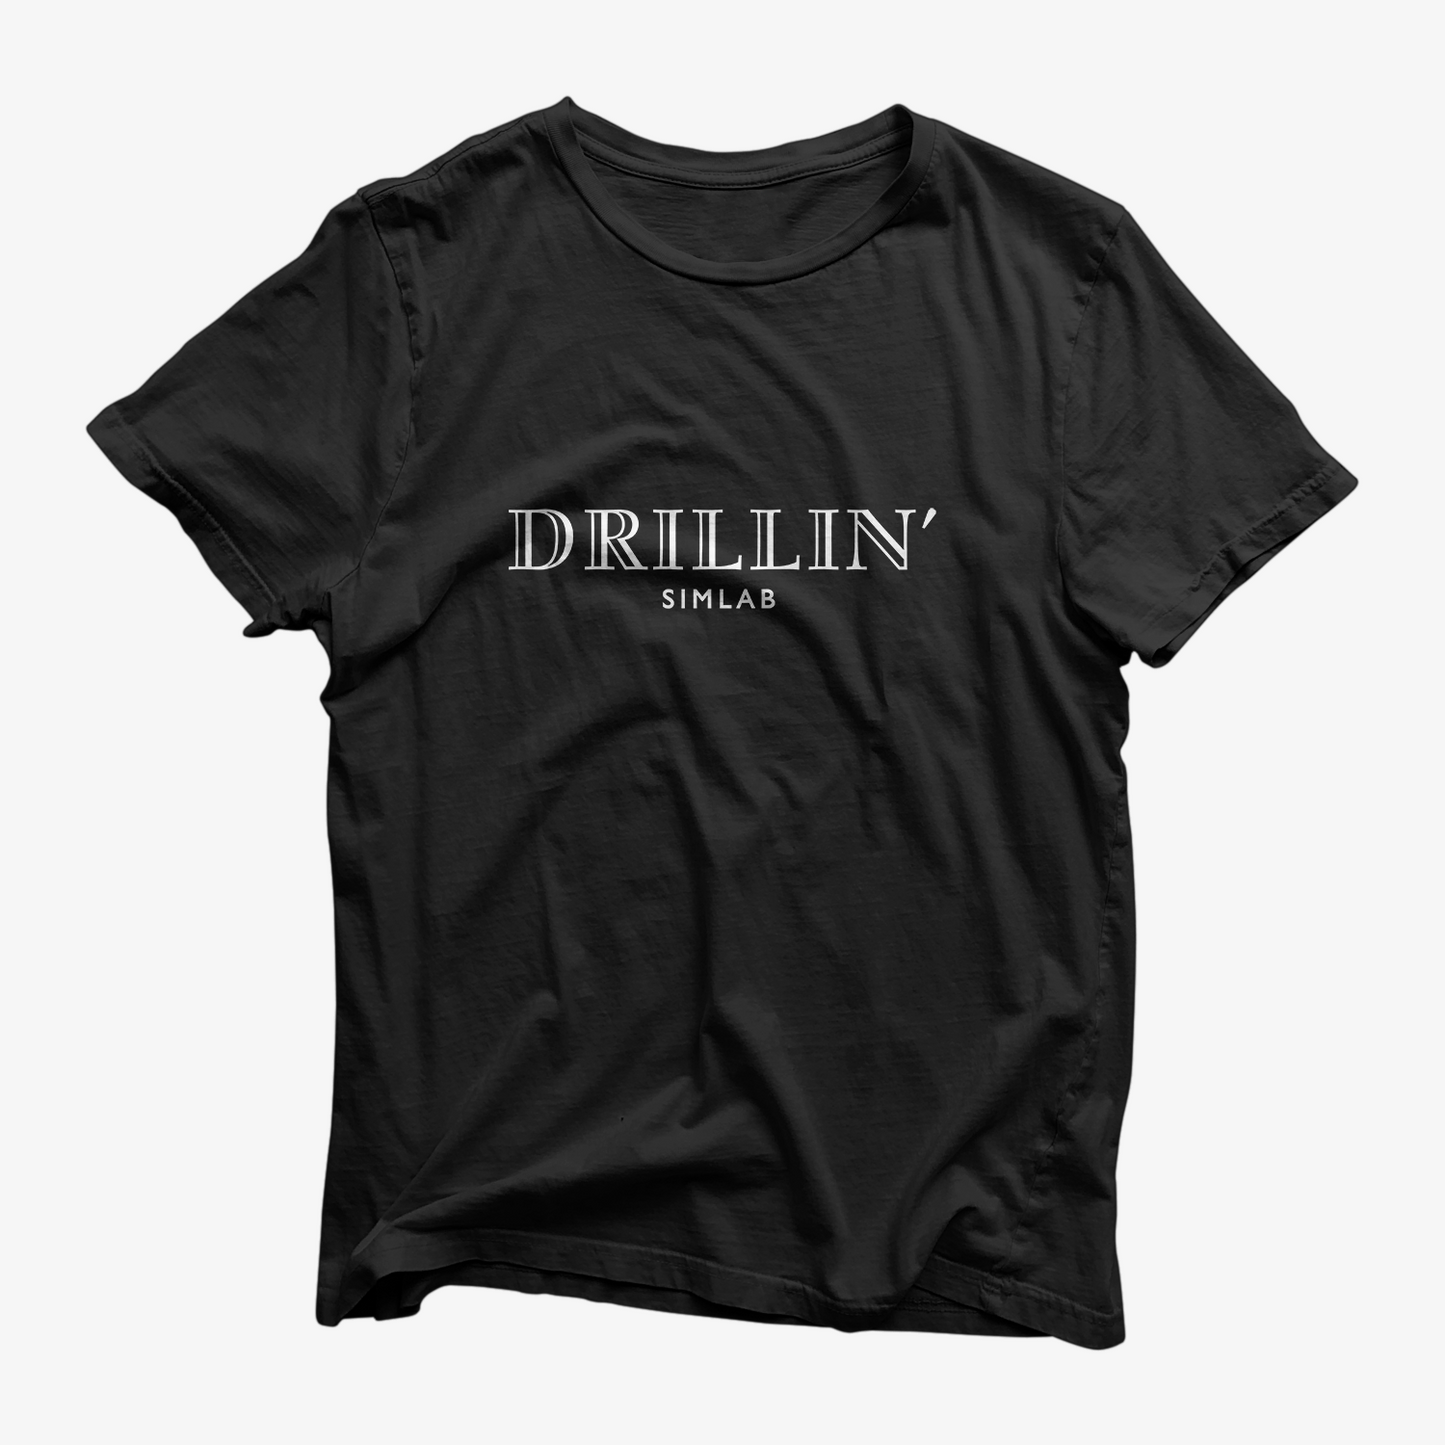 Drillin' Shirt